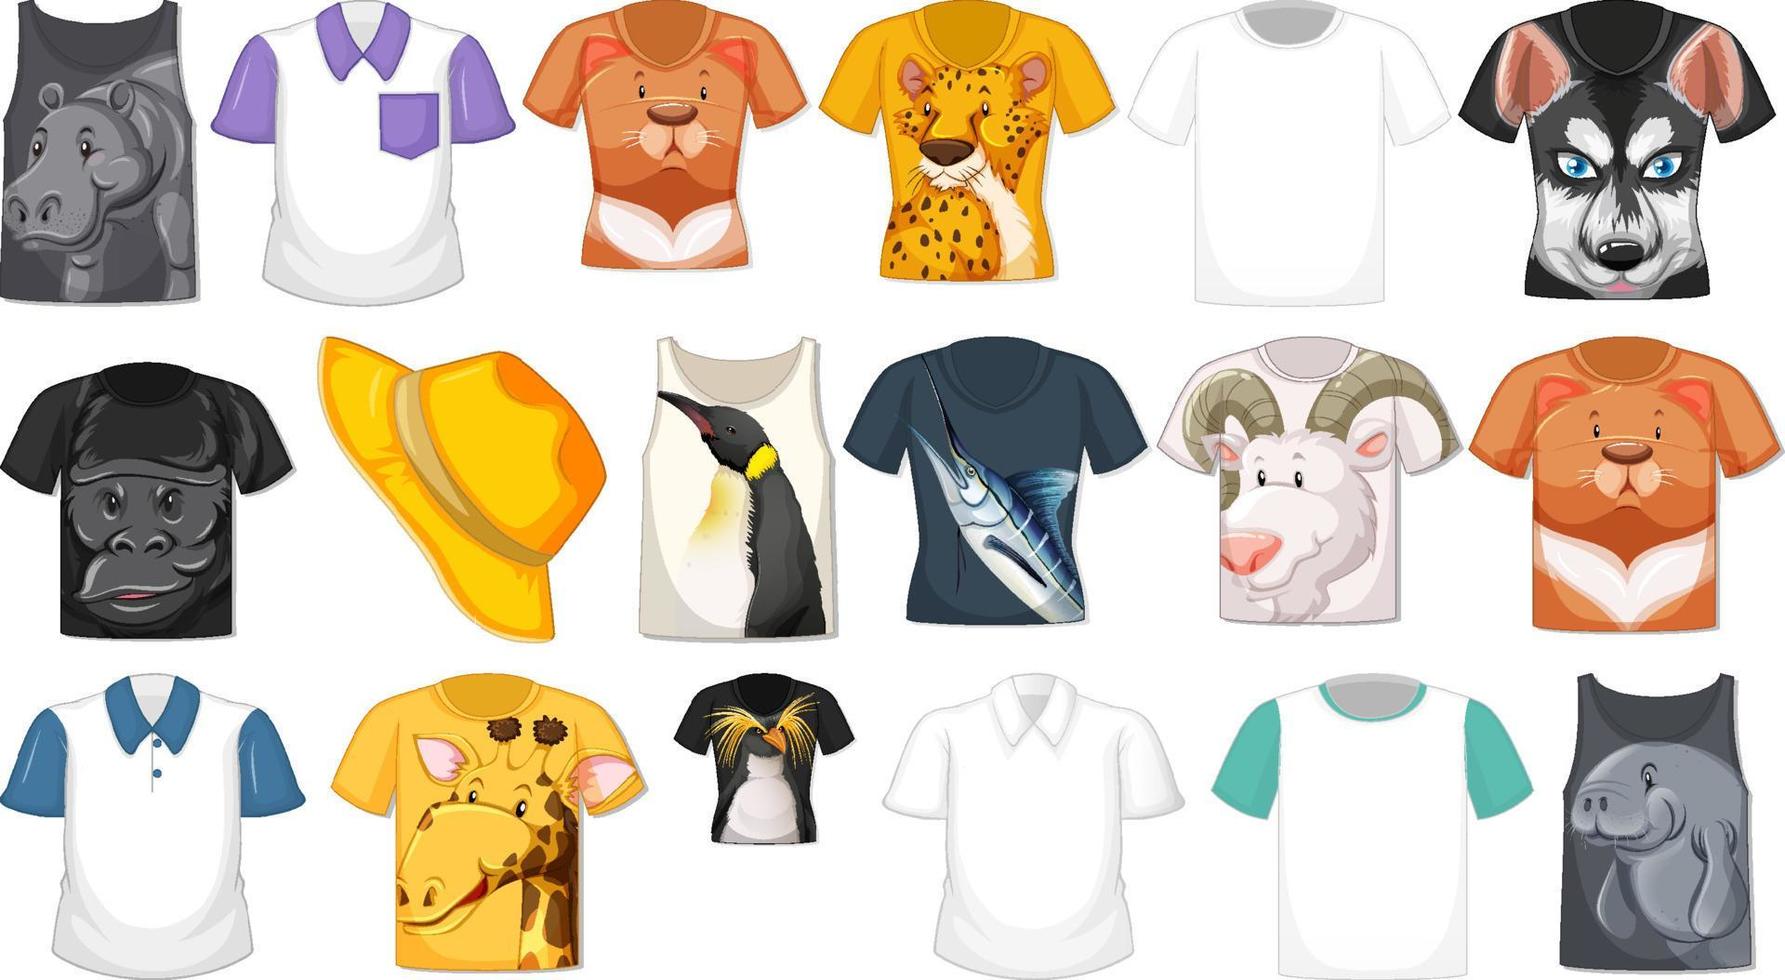 set van verschillende shirts en accessoires met dierenpatronen vector